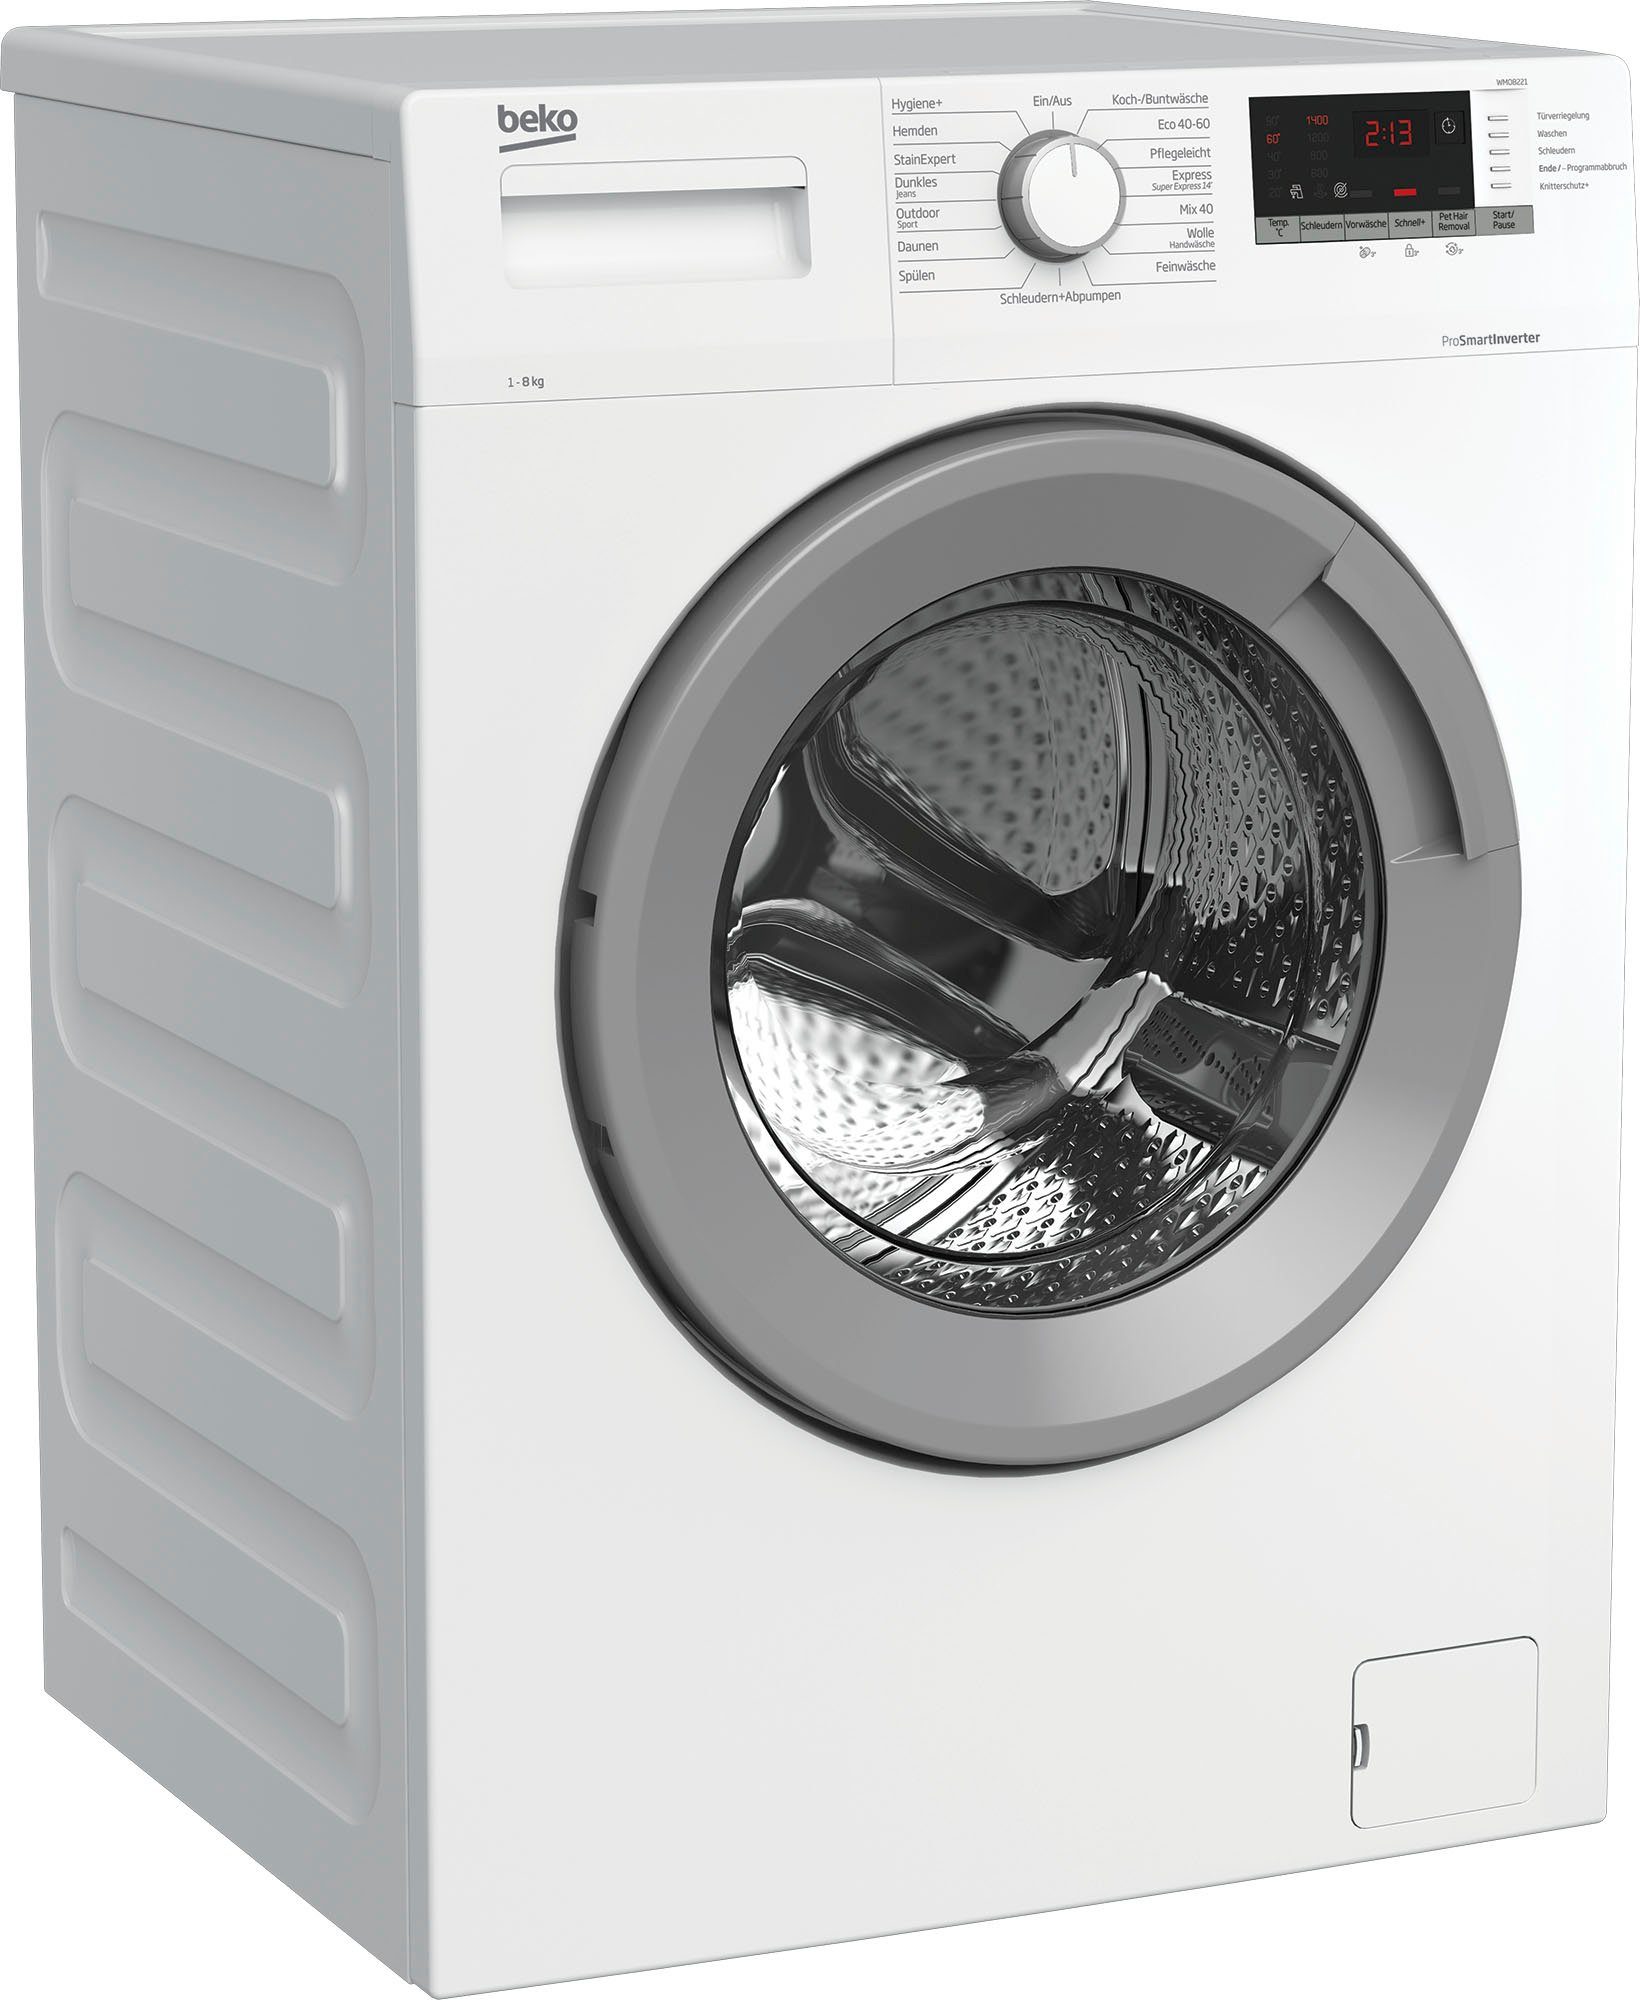 kg, BEKO U/min WMO8221, 1400 8 Waschmaschine